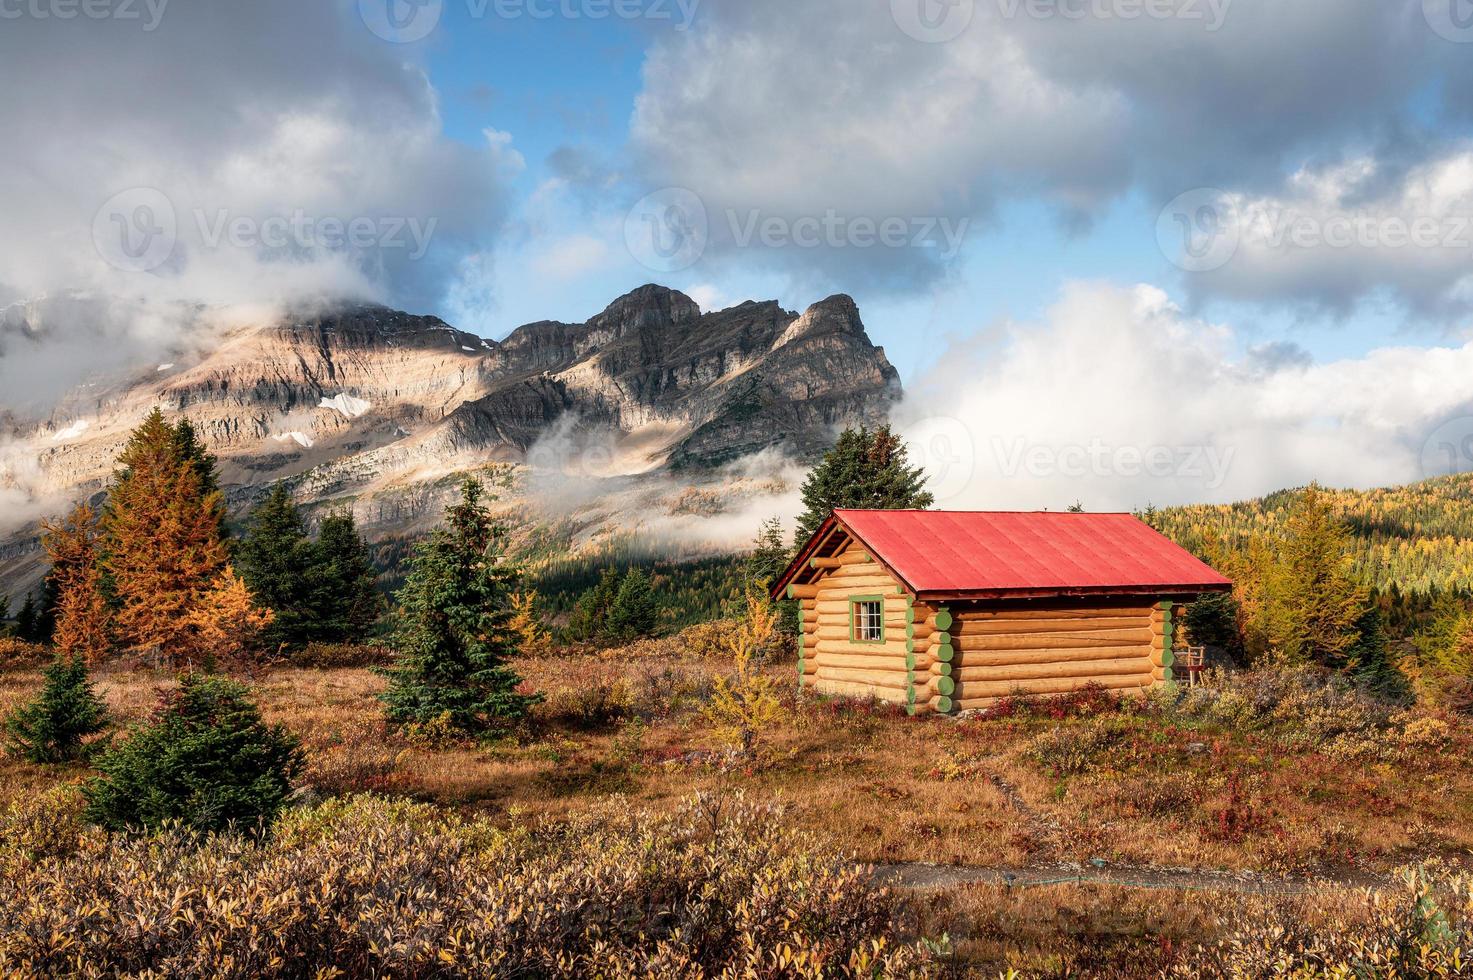 cabanas de madeira com montanhas rochosas na floresta de outono no parque provincial de assiniboine foto